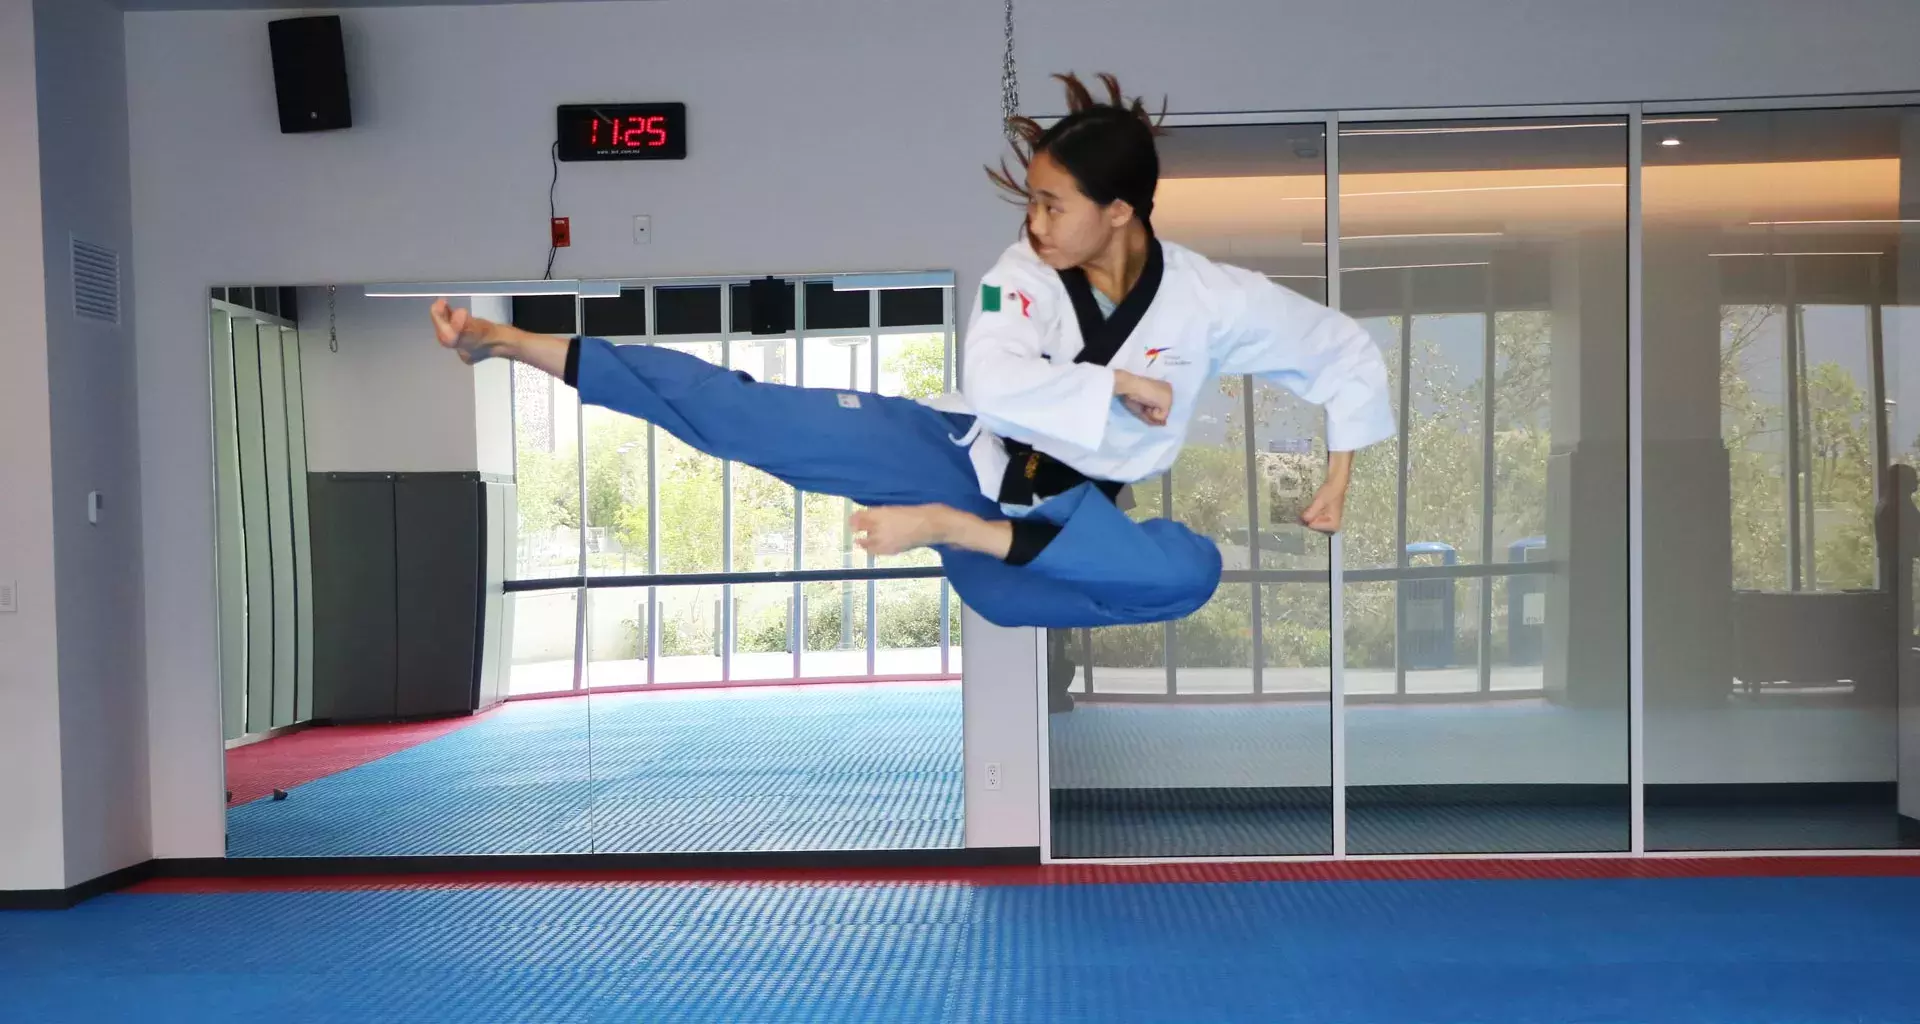 ¡Oro para México! La taekwondoín que marcó nueva hazaña en el País